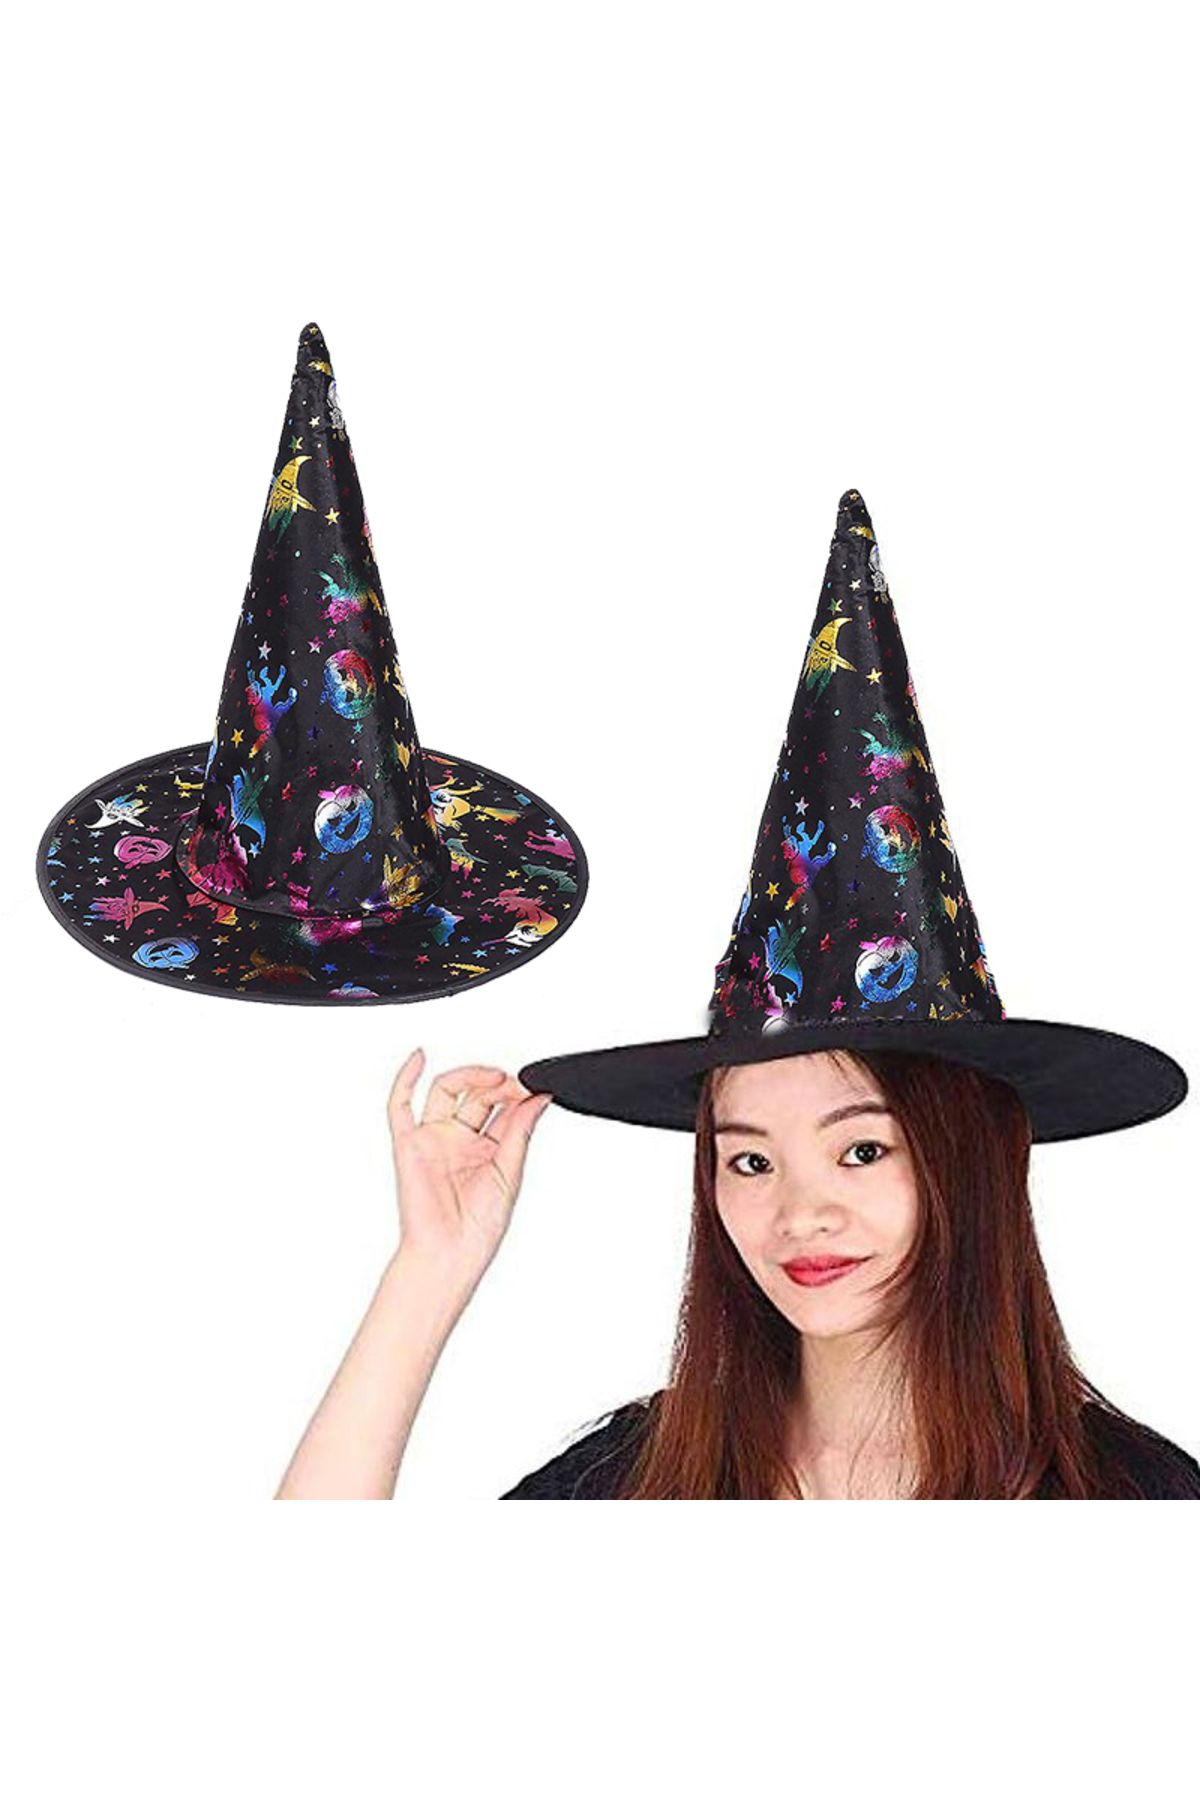 MENBOX CLZ192 Cadı Şapkası Siyah Üzeri Rengarenk Balkabağı Cadı Figür Baskılı 38x34 Cm (4172)